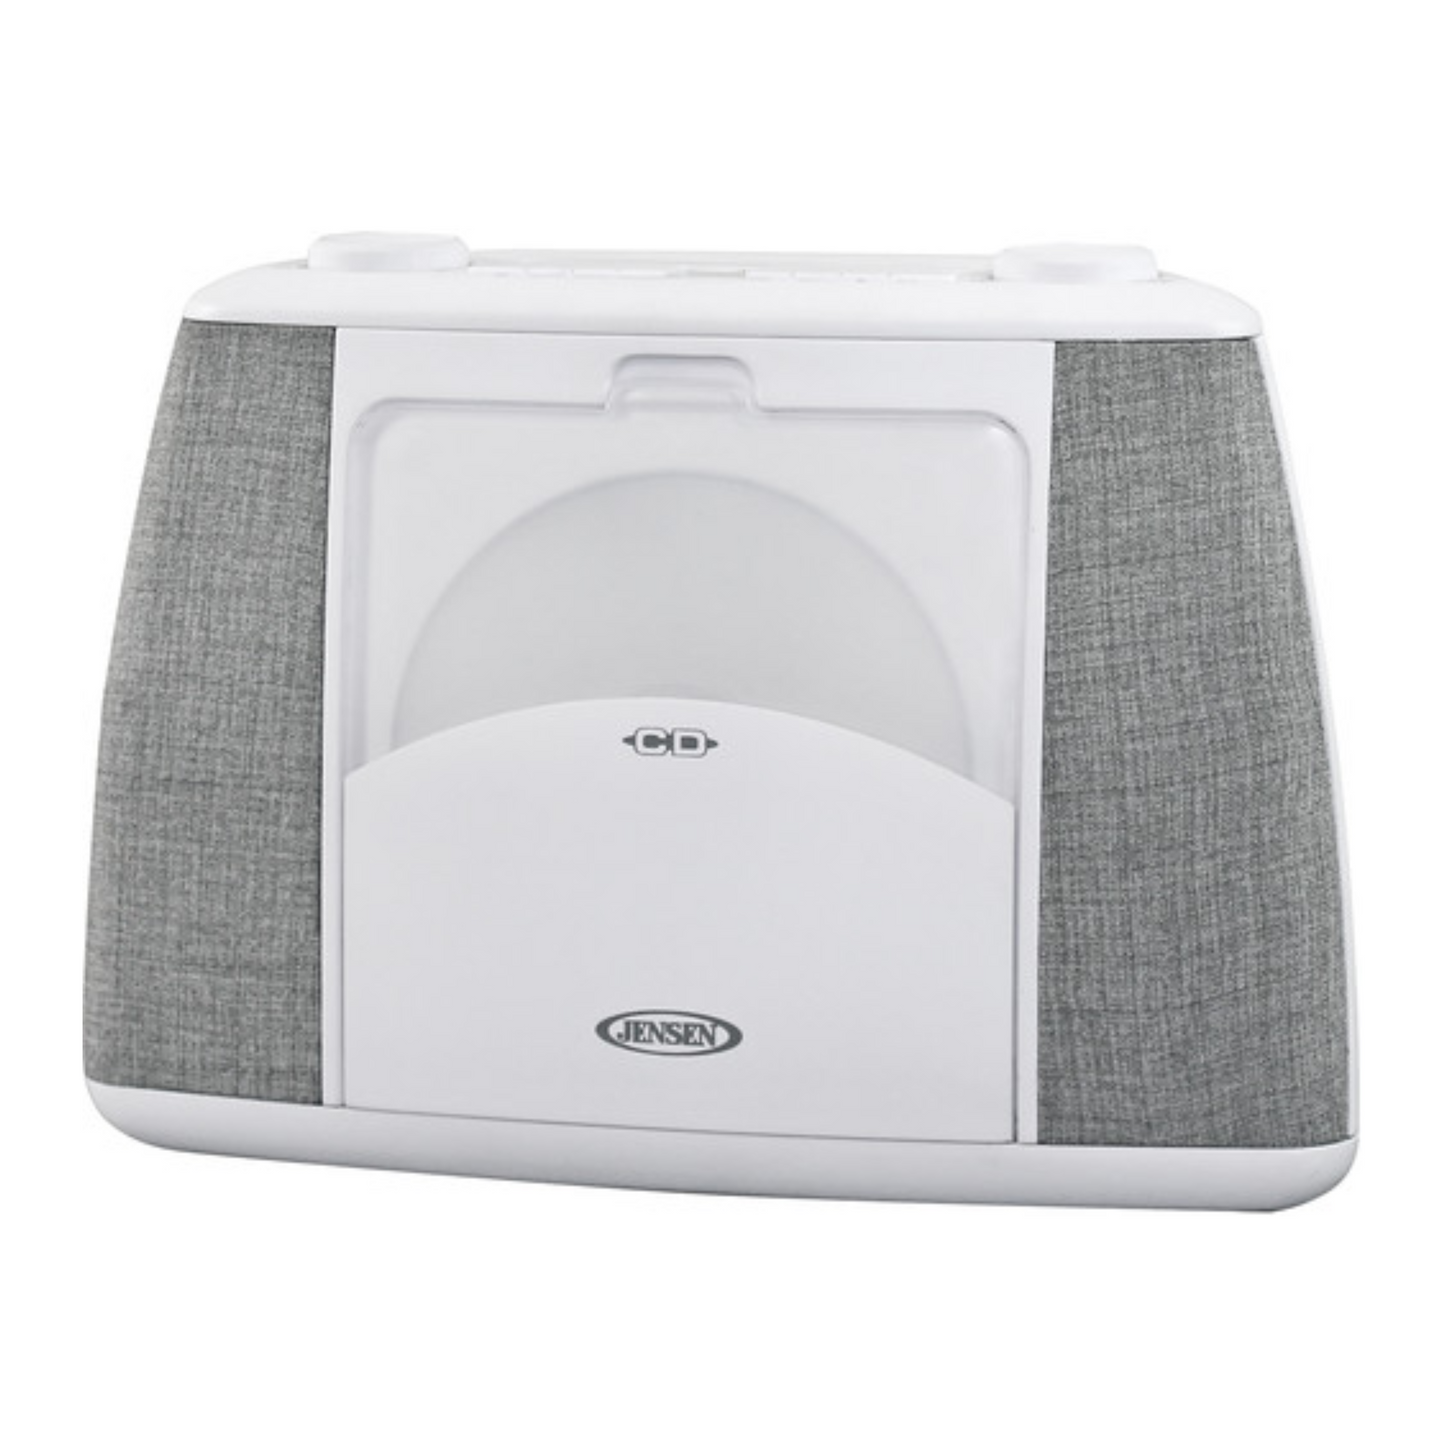 Jensen Portable Bluetooth CD Player (White)